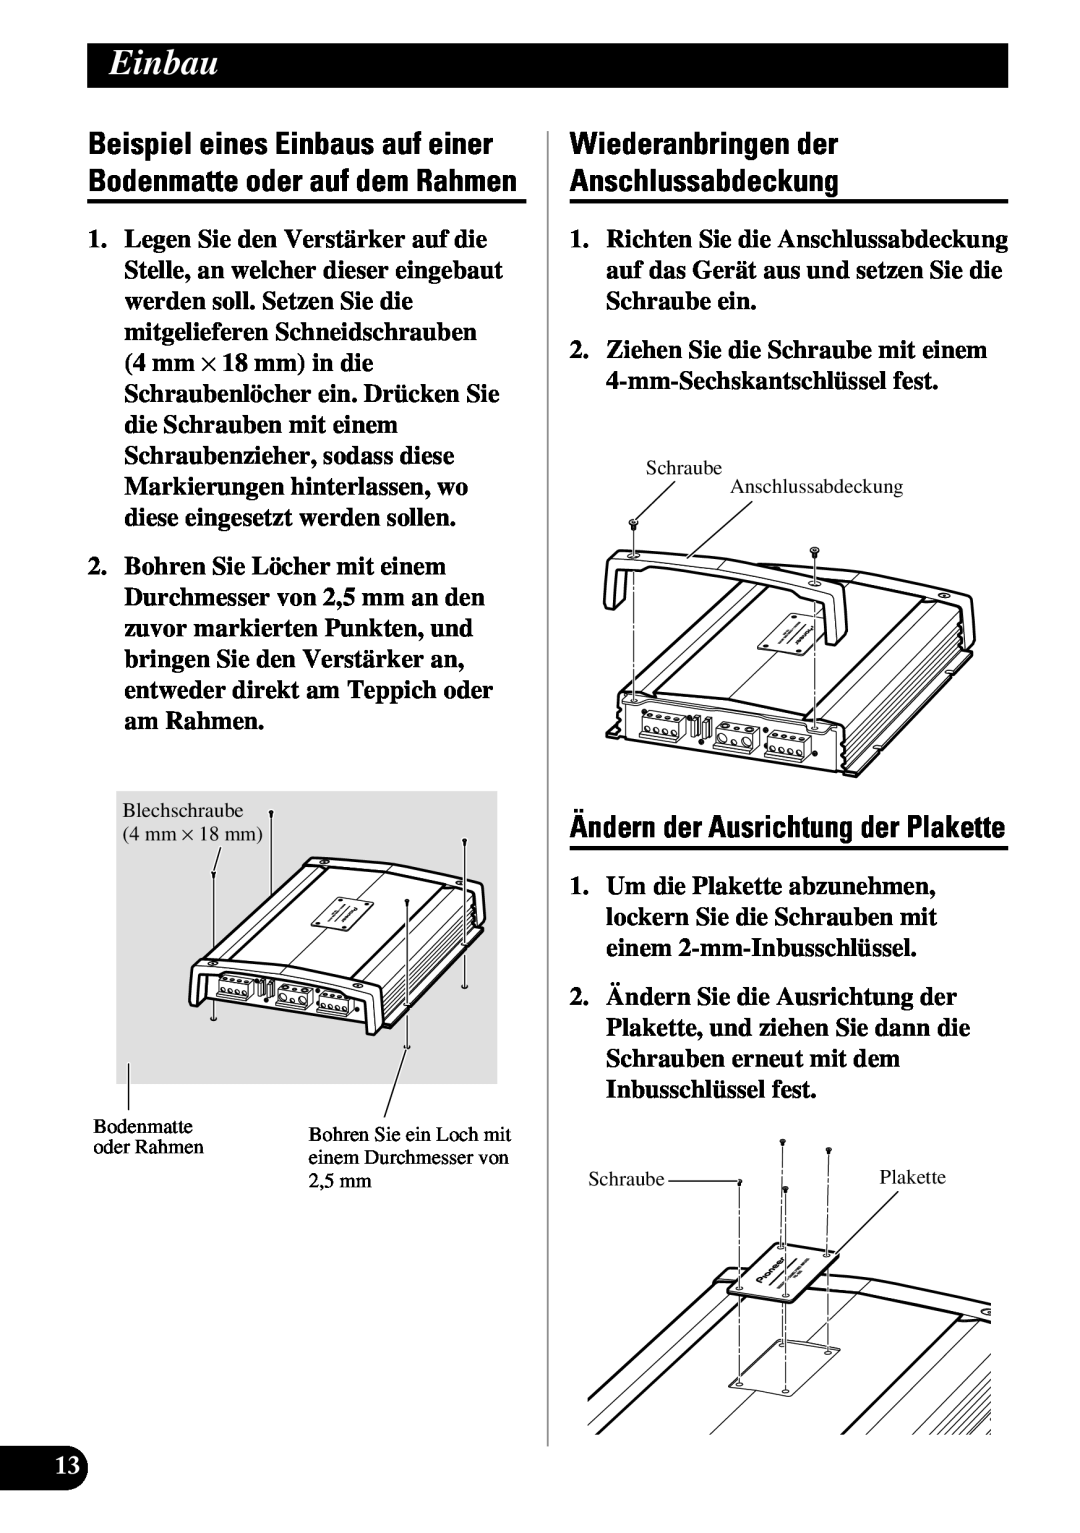 Pioneer PRS-A900 owner manual Wiederanbringen der Anschlussabdeckung, Ändern der Ausrichtung der Plakette, Einbau 